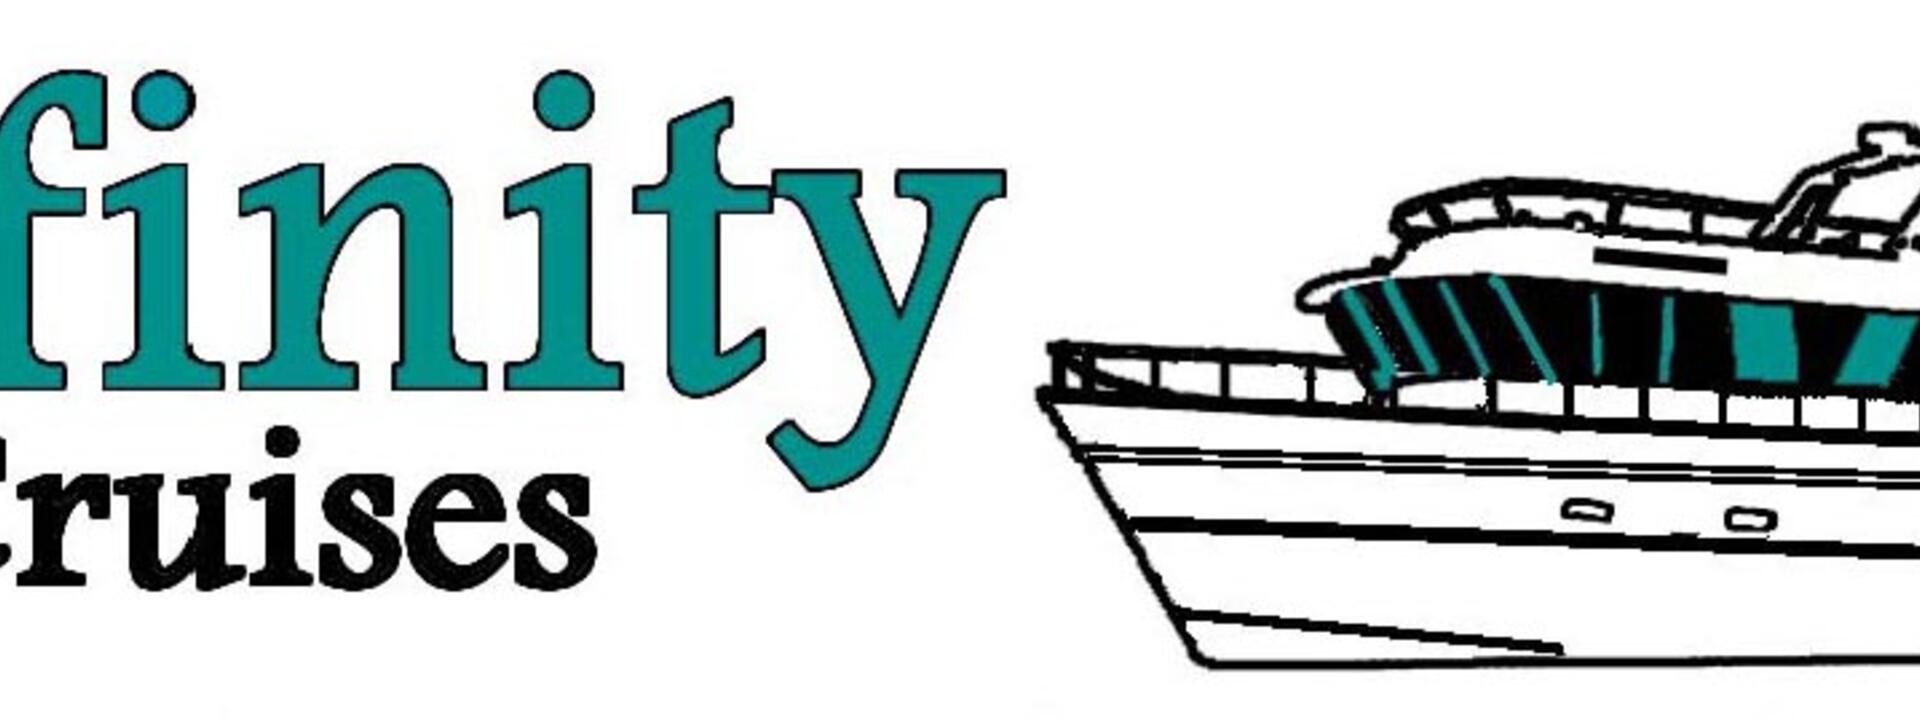 Affinity Logo No slogan - Copy.JPG